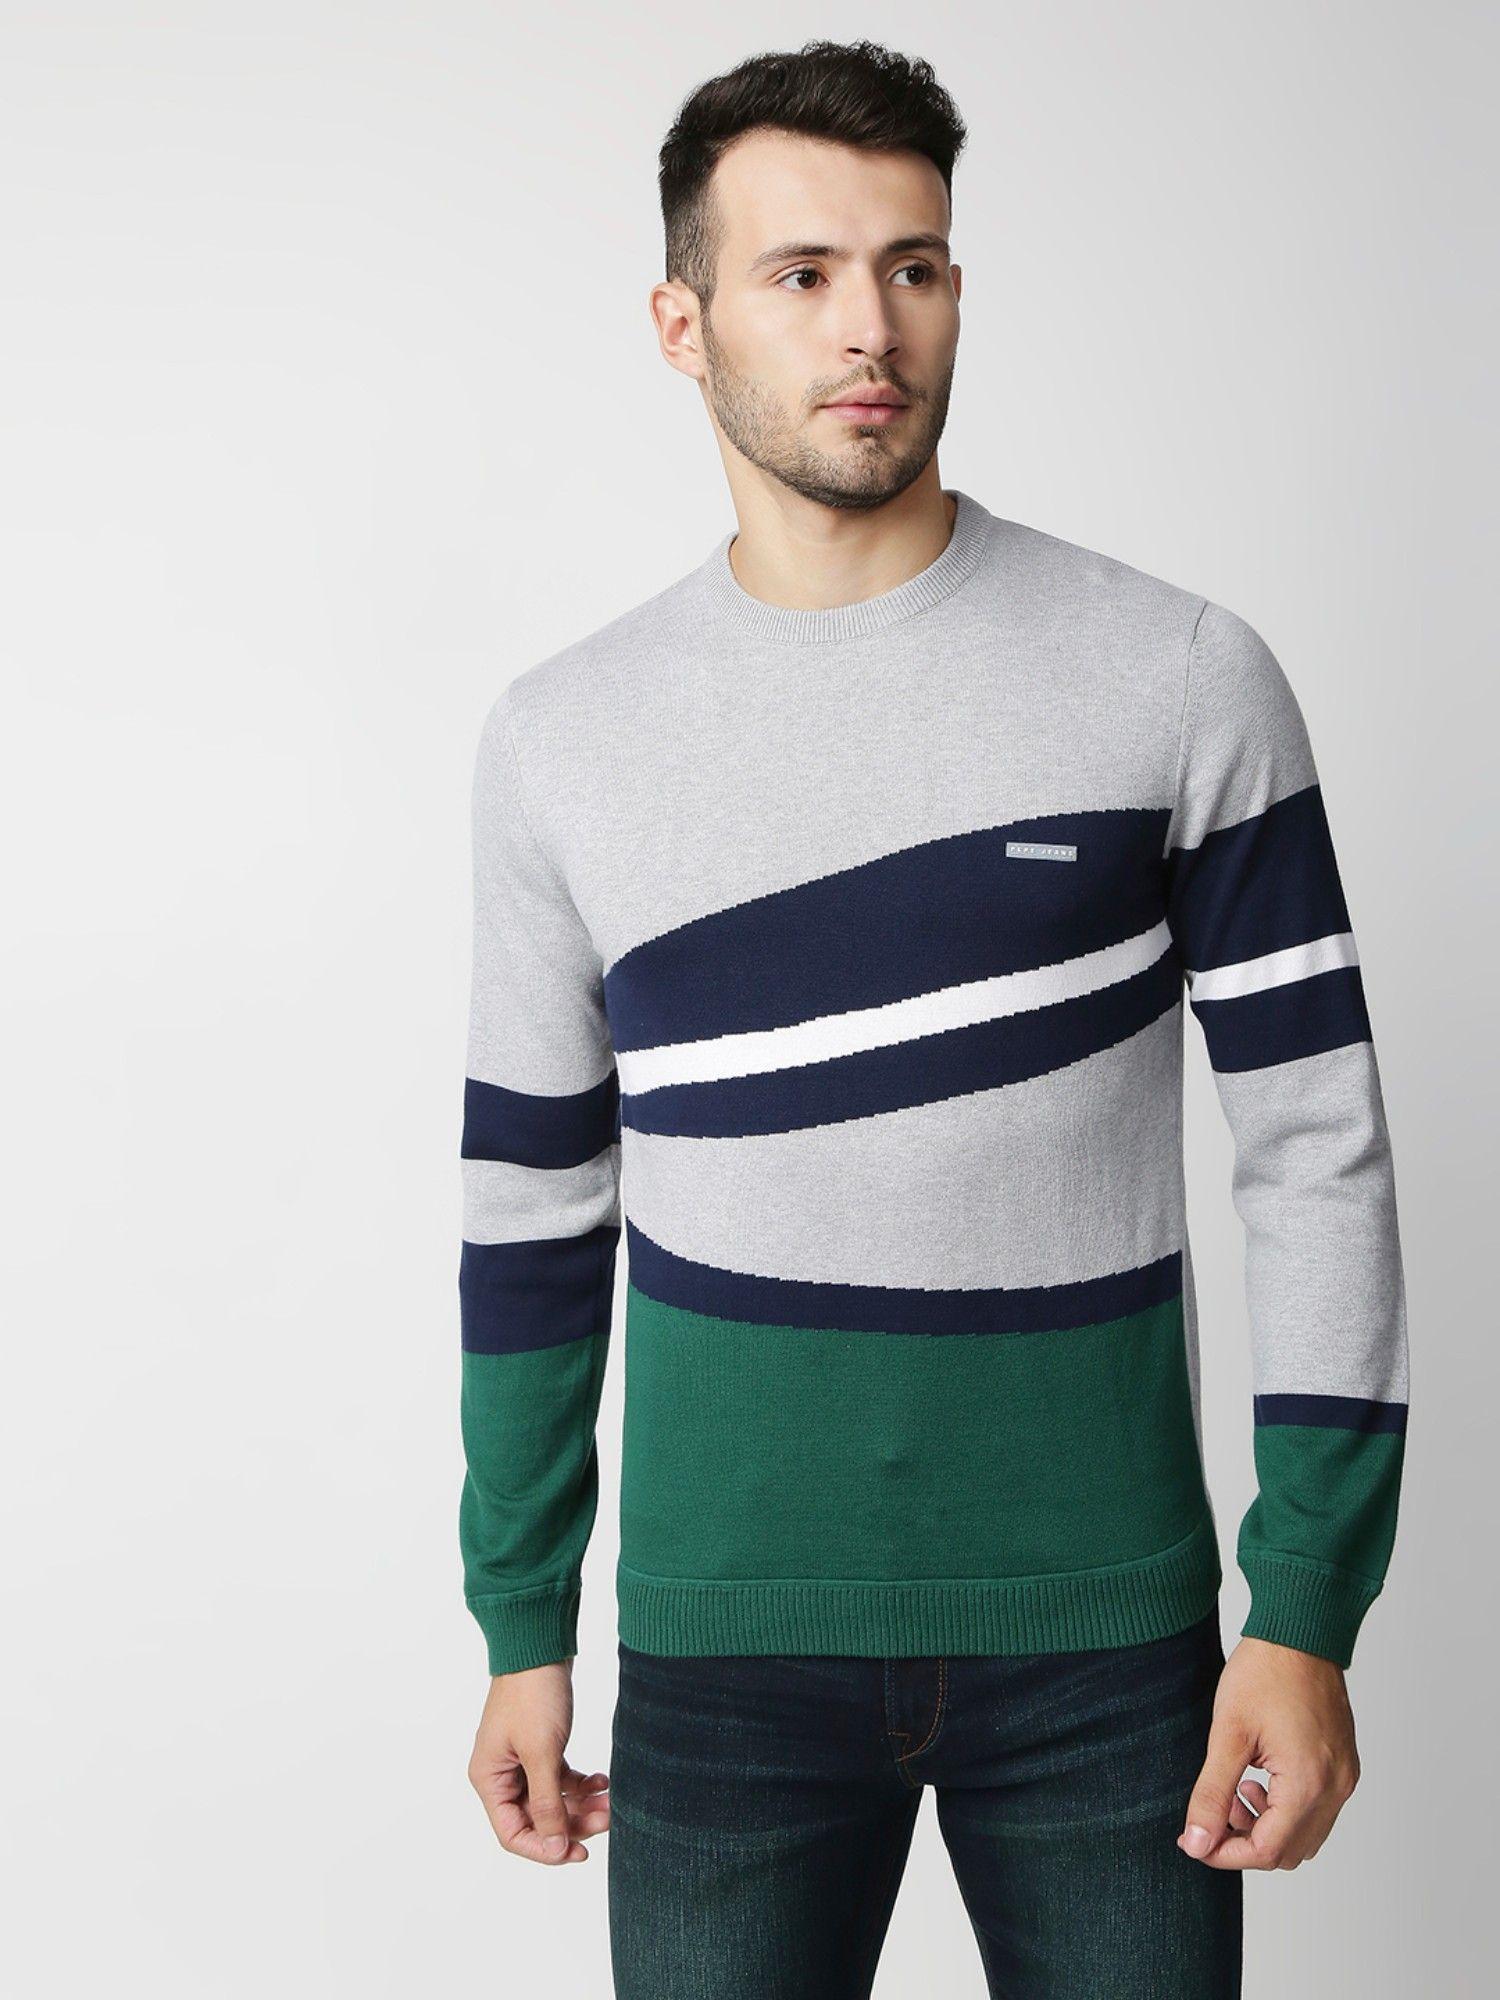 mariano trendy color block multi-color sweater